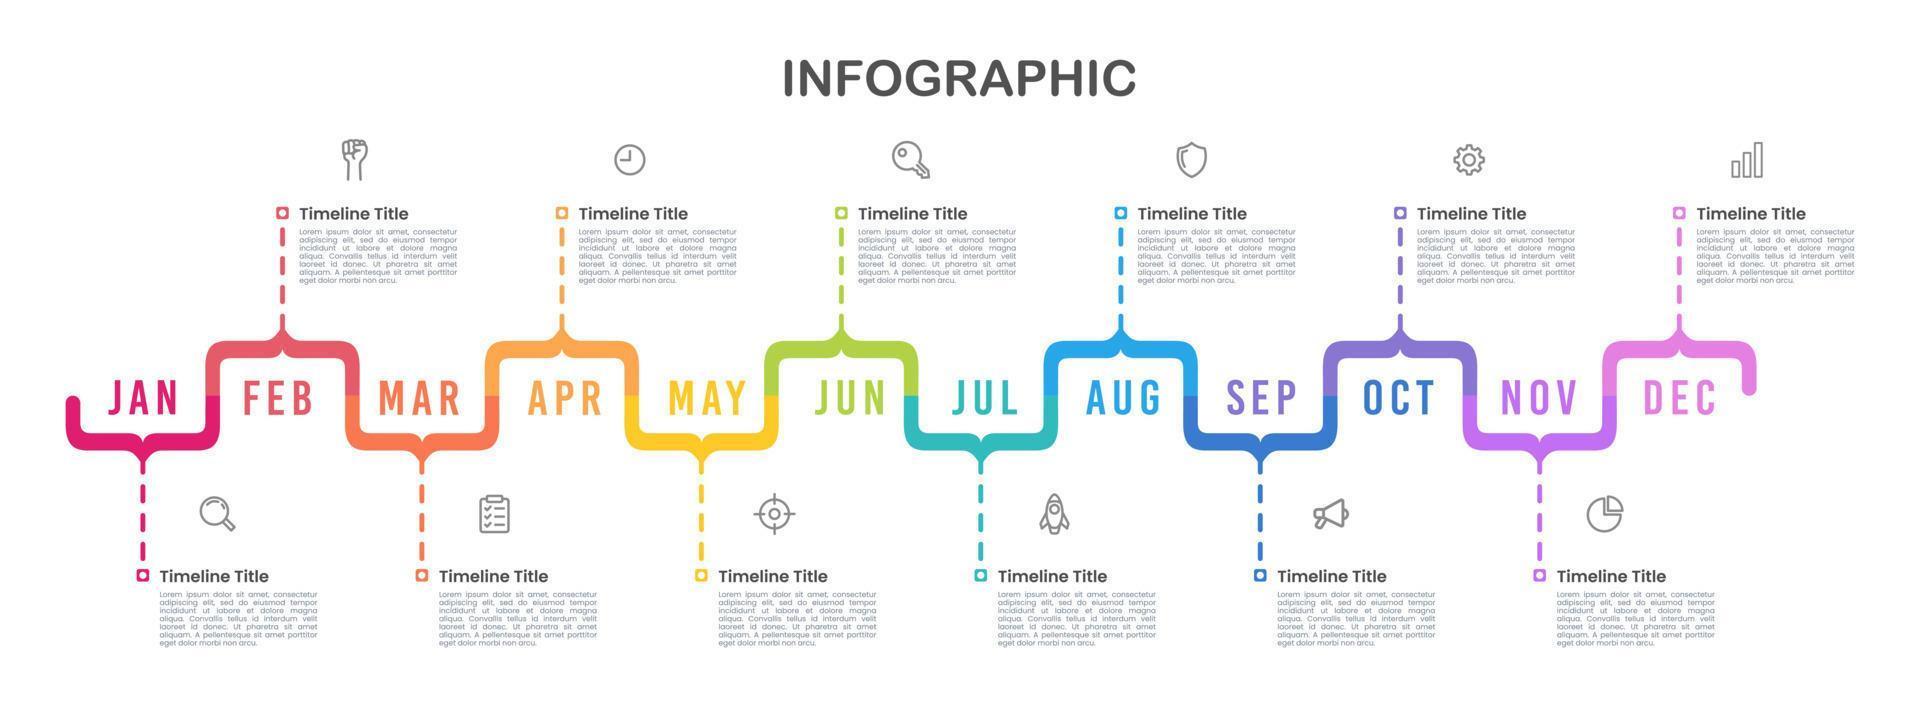 företag infographic konsol mall. 12 månader tidslinjen. vektor illustration.